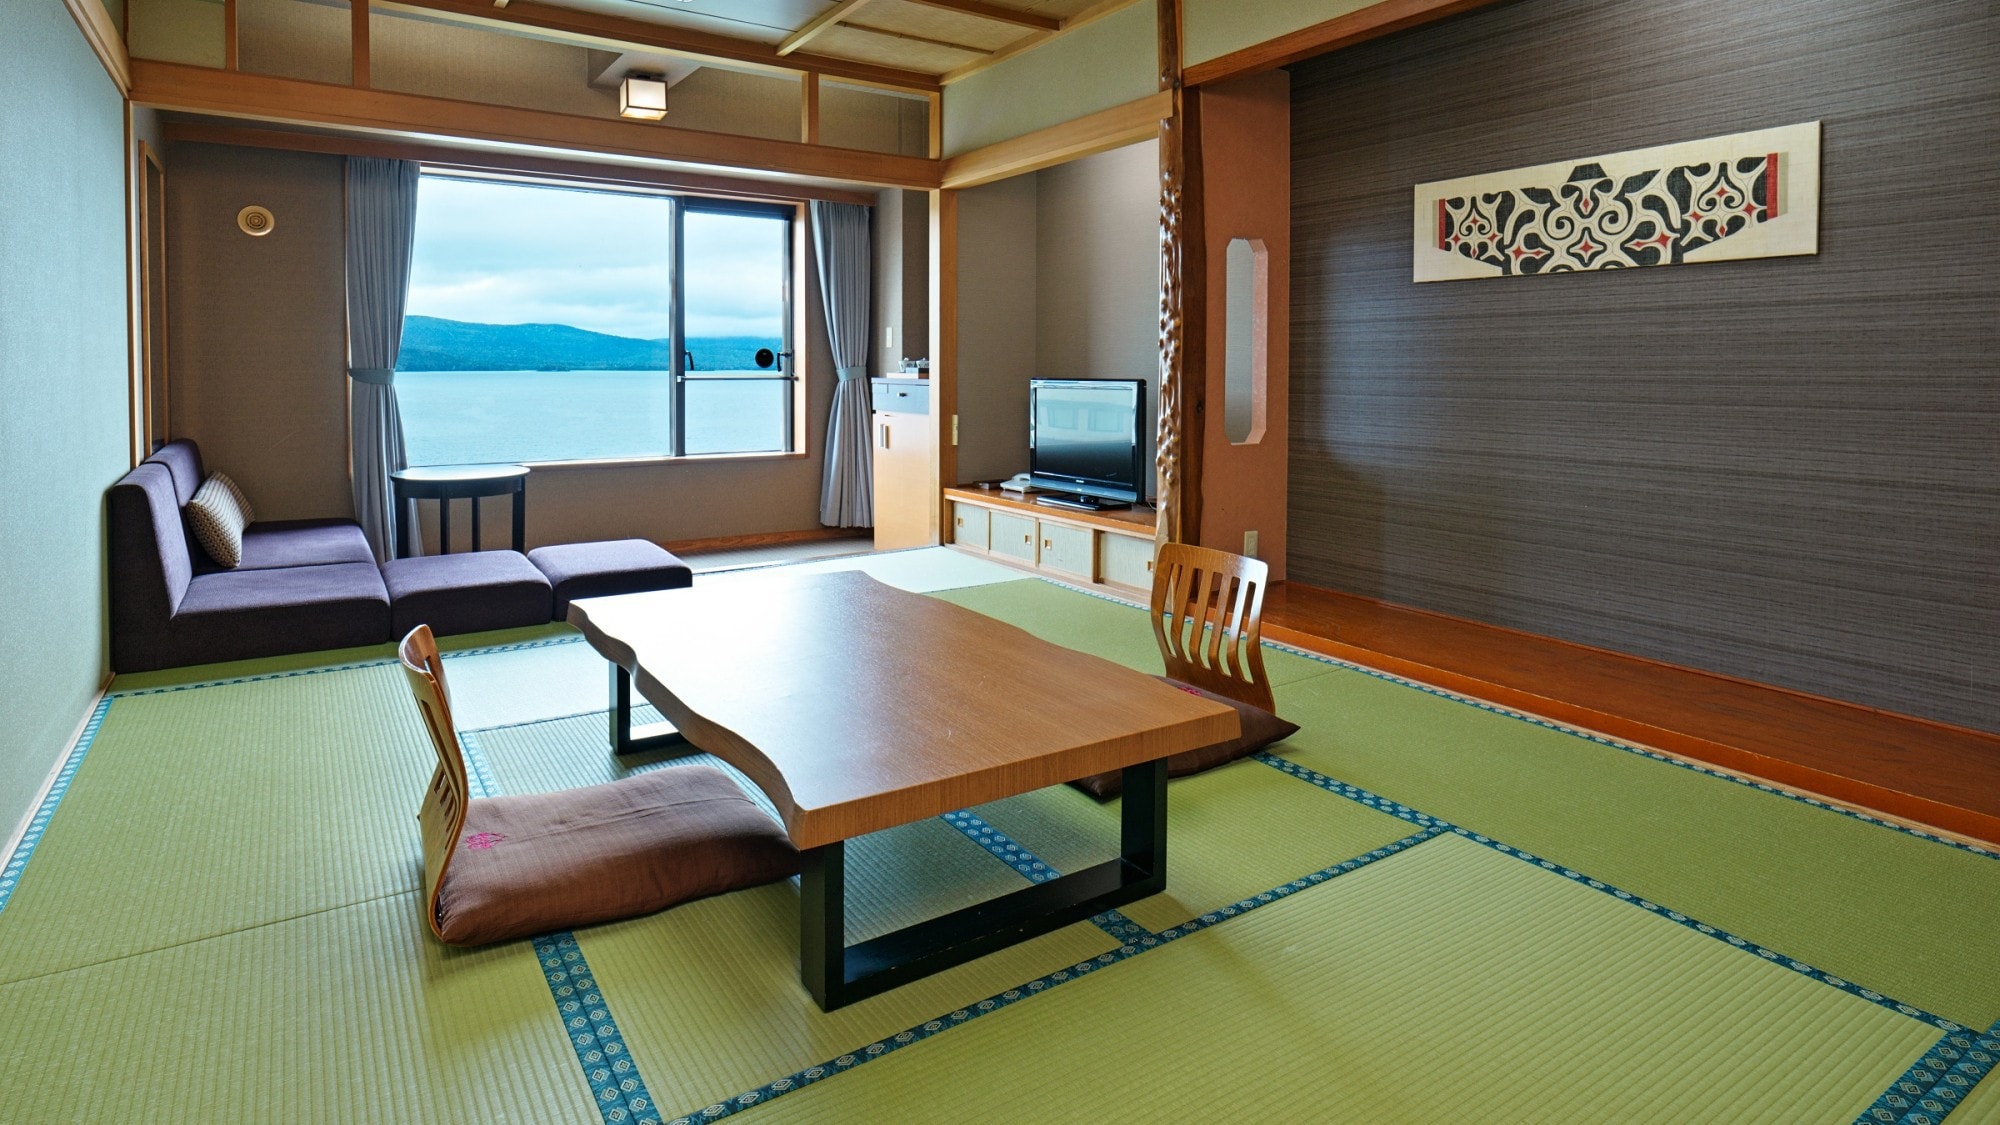 [ริมทะเลสาบ] ห้องสไตล์ญี่ปุ่น / ห้องสไตล์ญี่ปุ่นที่ใช้เวลาพักผ่อนได้อย่างสบายๆ พร้อมสัมผัสบรรยากาศแบบญี่ปุ่น